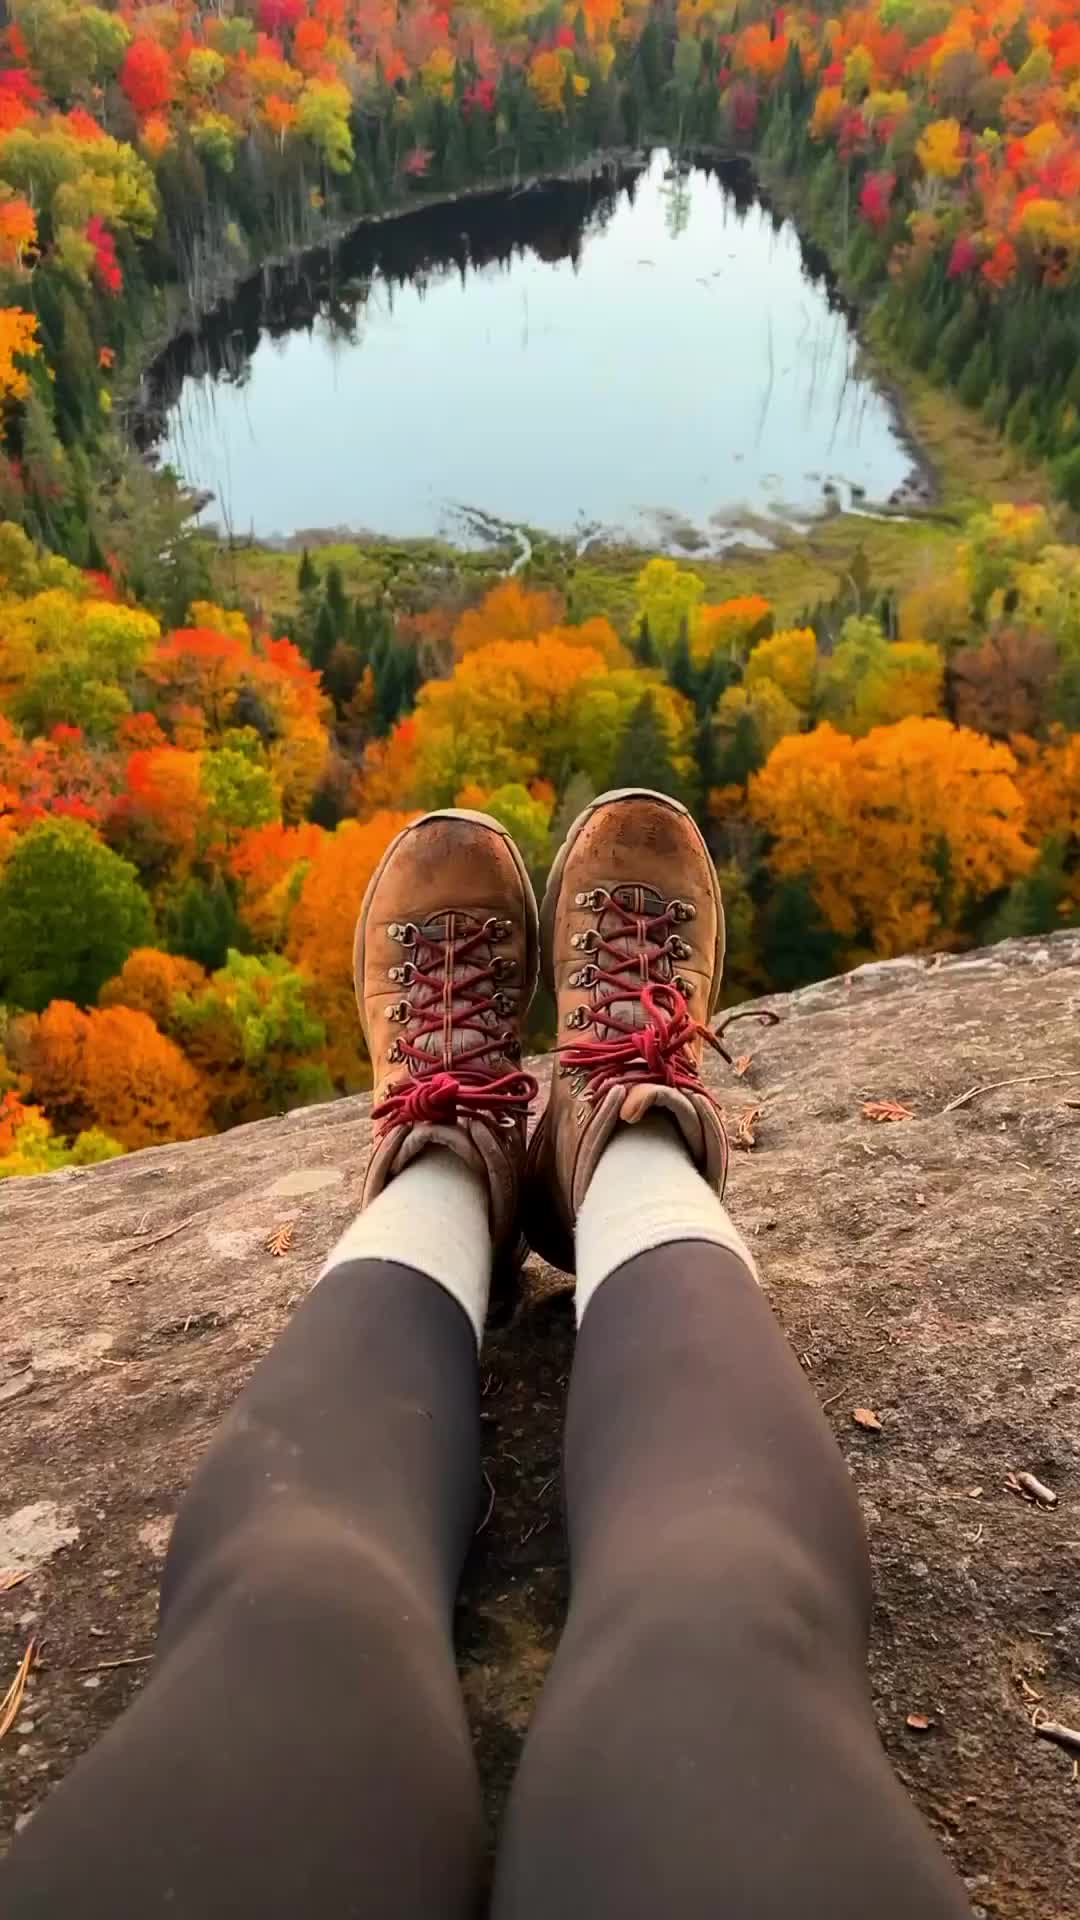 Quebec's Laurentian Mountains at Peak Autumn Colors